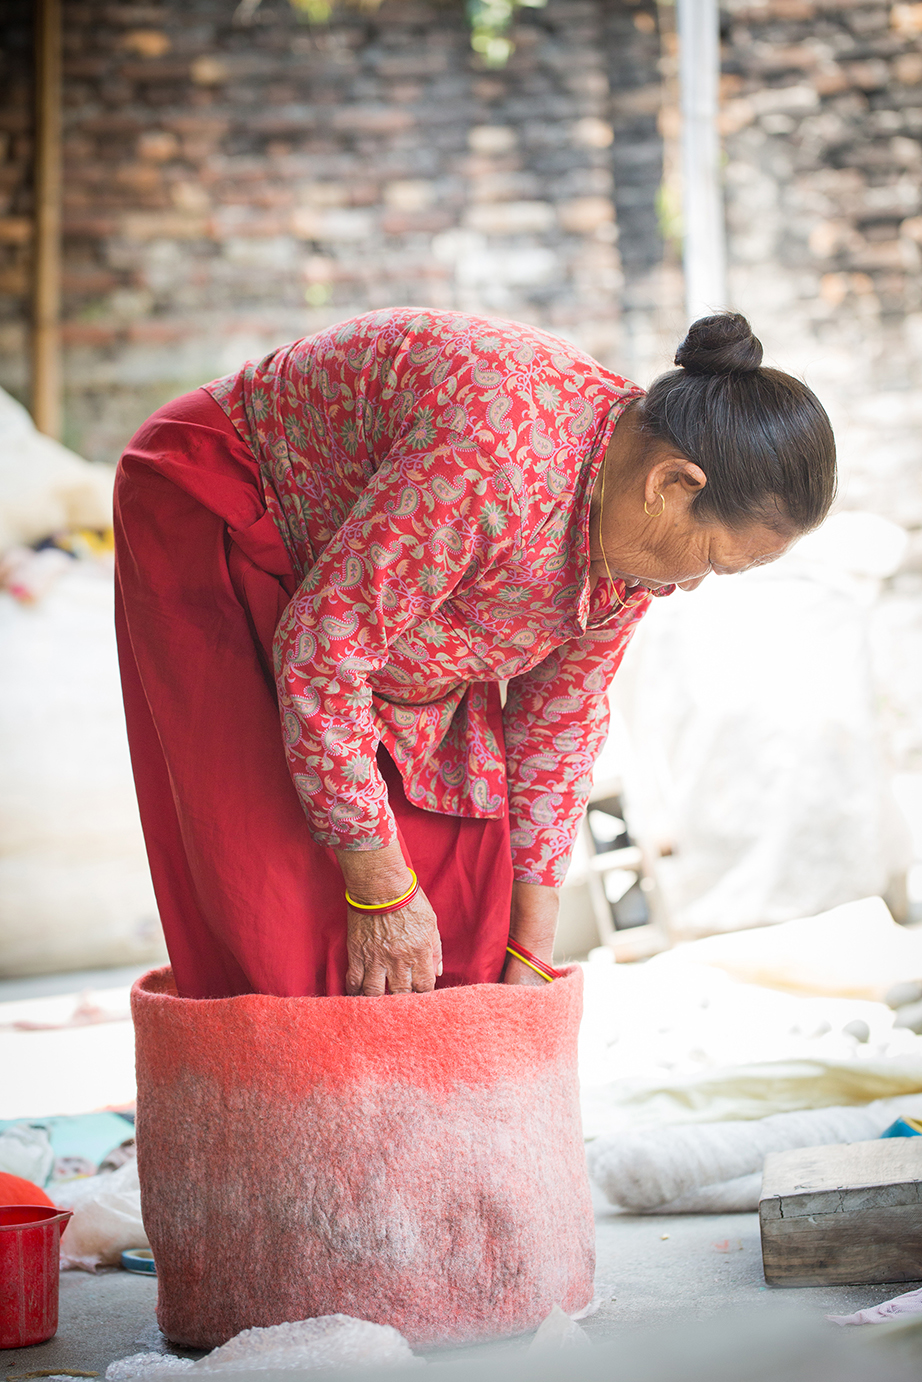 Femme népalaise en train de façonné un panier en feutre rouge et gris